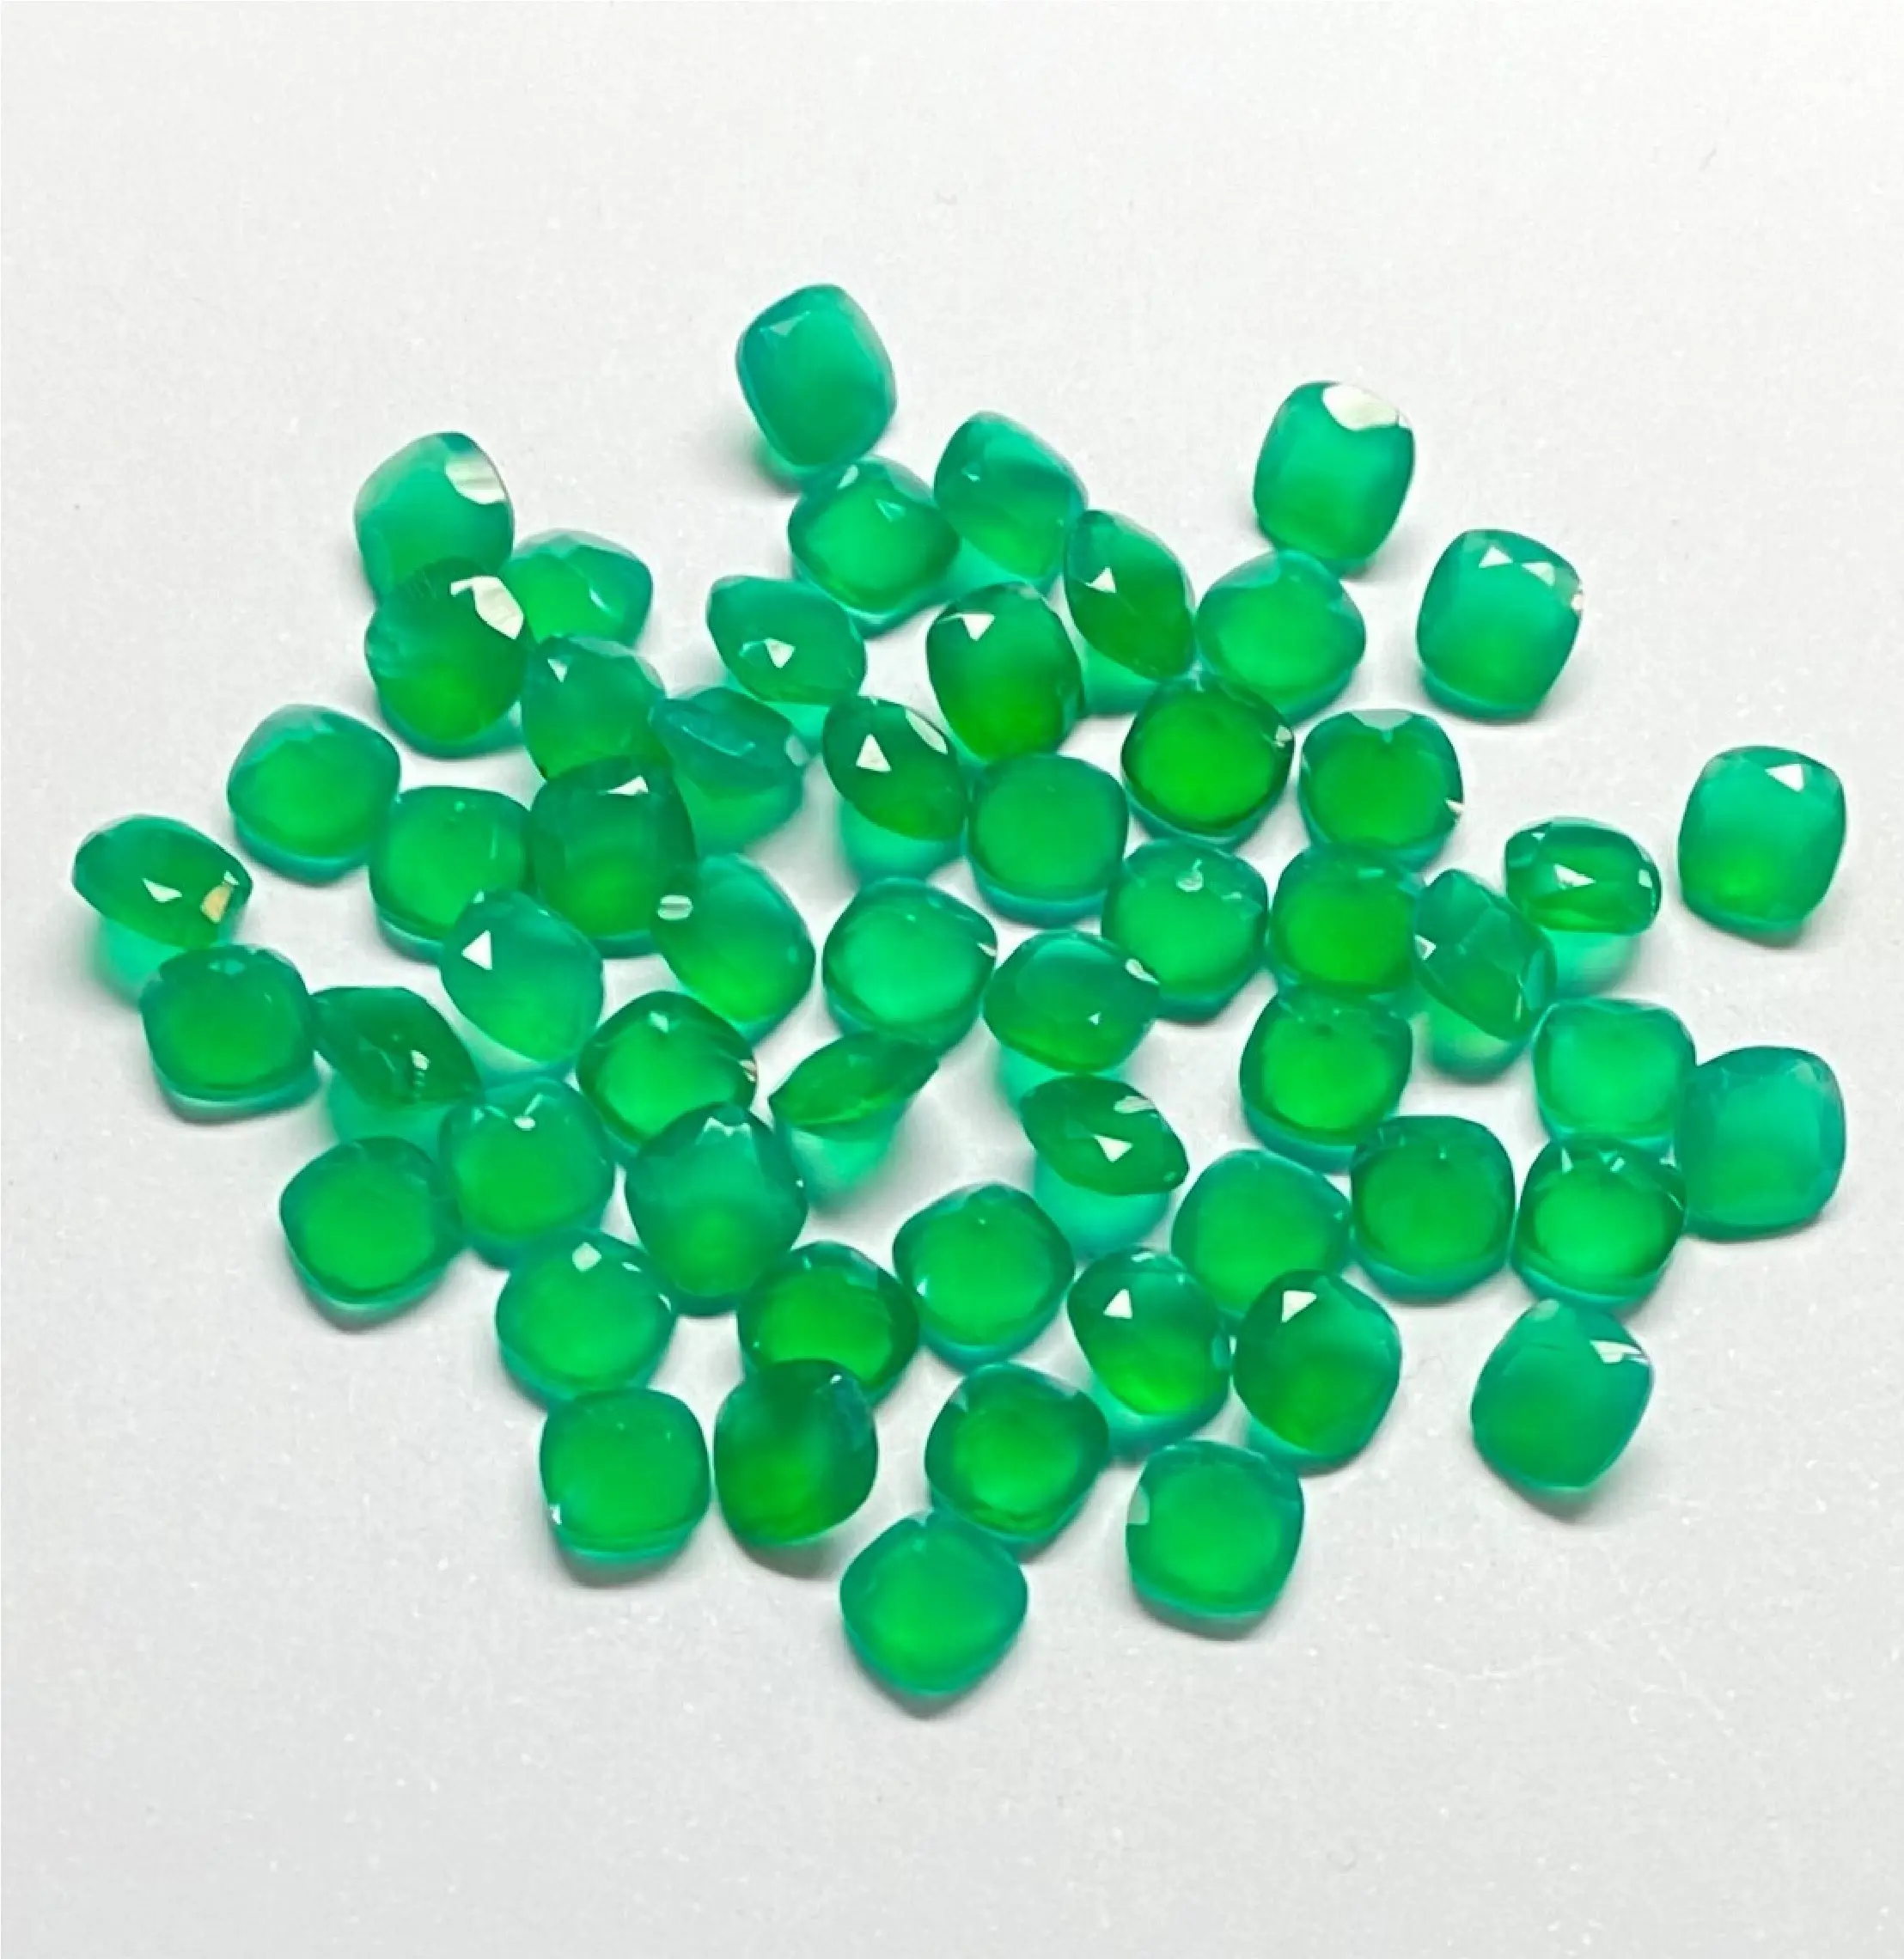 החדש ביותר ירוק אוניקס מתומן צורת כרית בודק חיתוך אבן חן רופפת לייצור תכשיטים